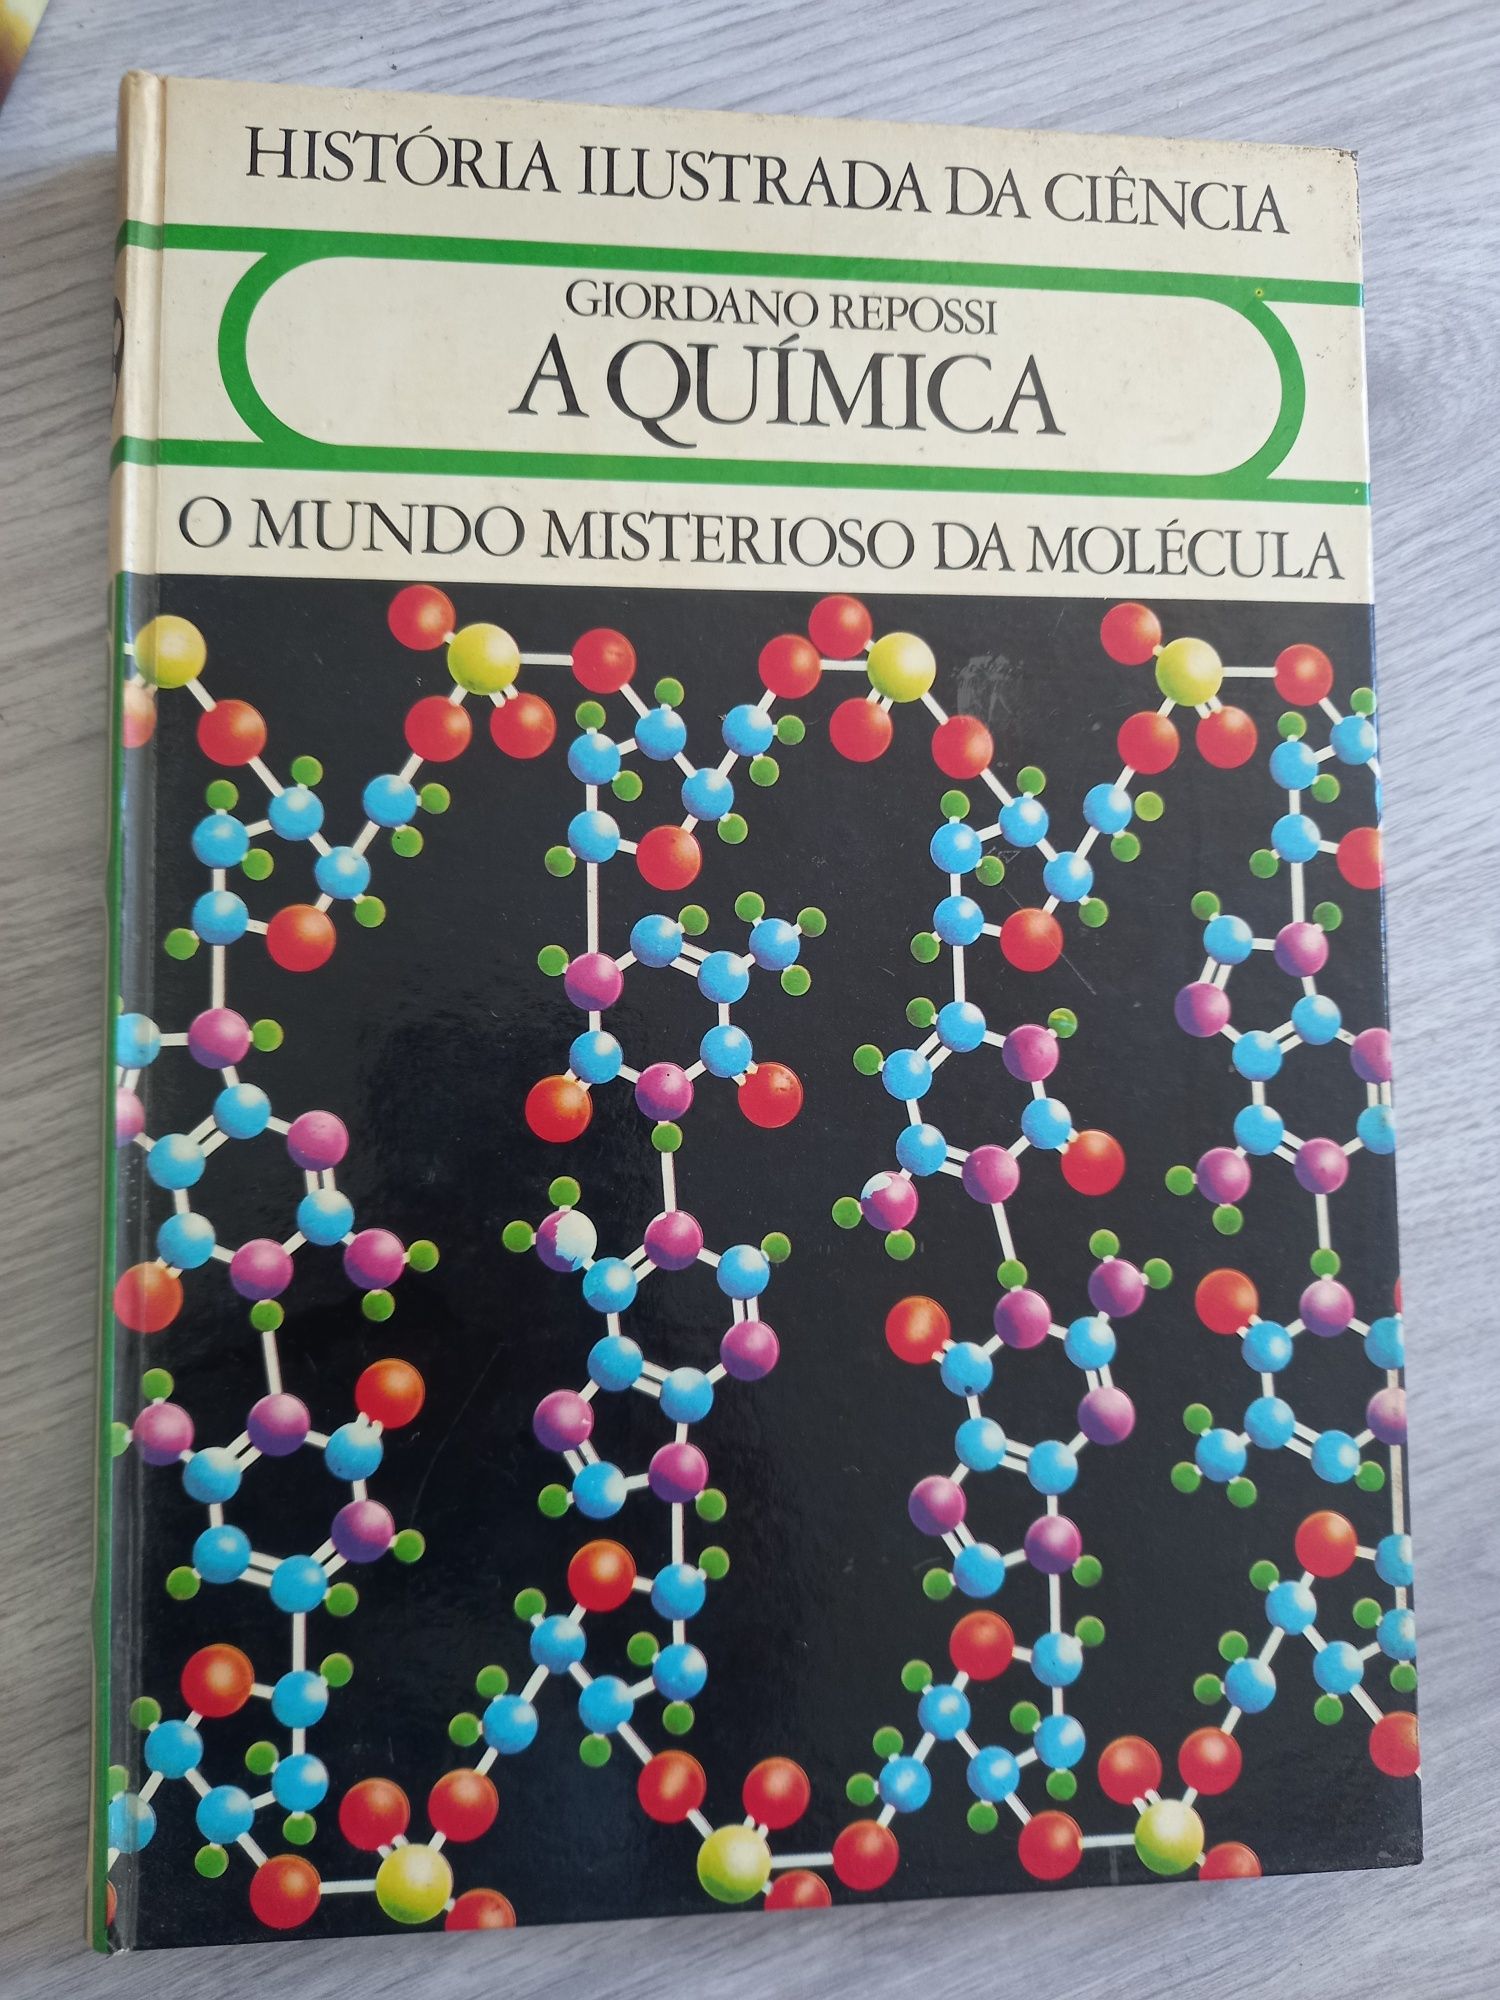 Livros. História Ilustrada da Ciência. Anos 80.